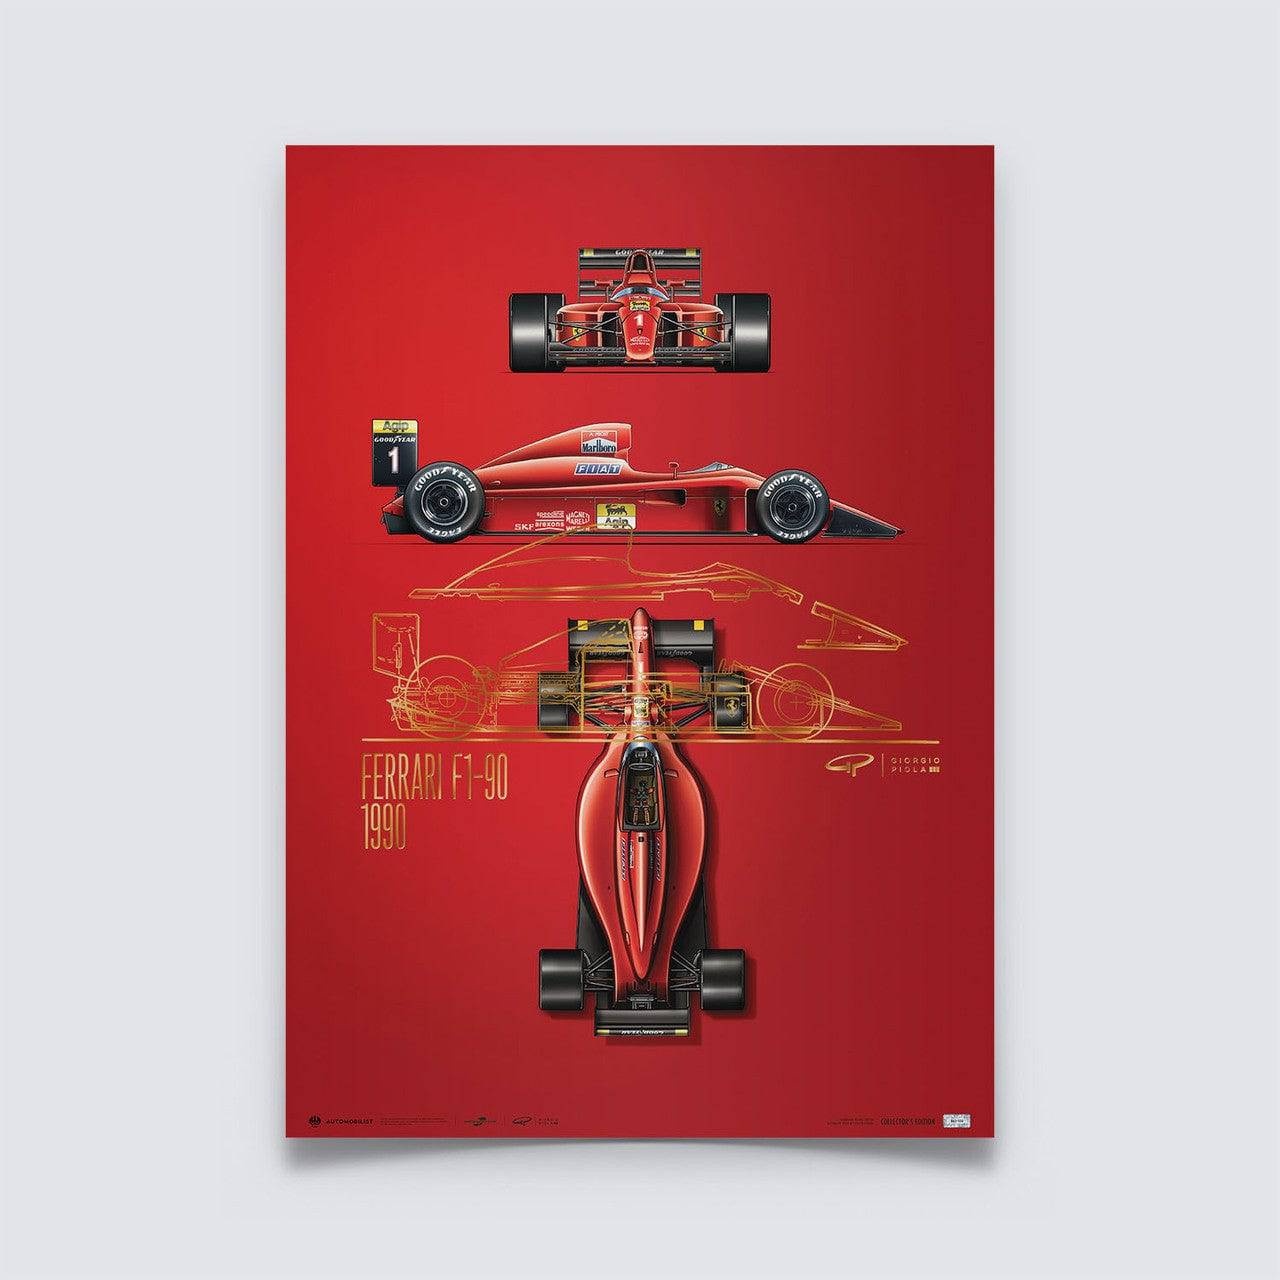 Giorgio Piola - Ferrari F1-90 - 1990 | Collector’s Edition